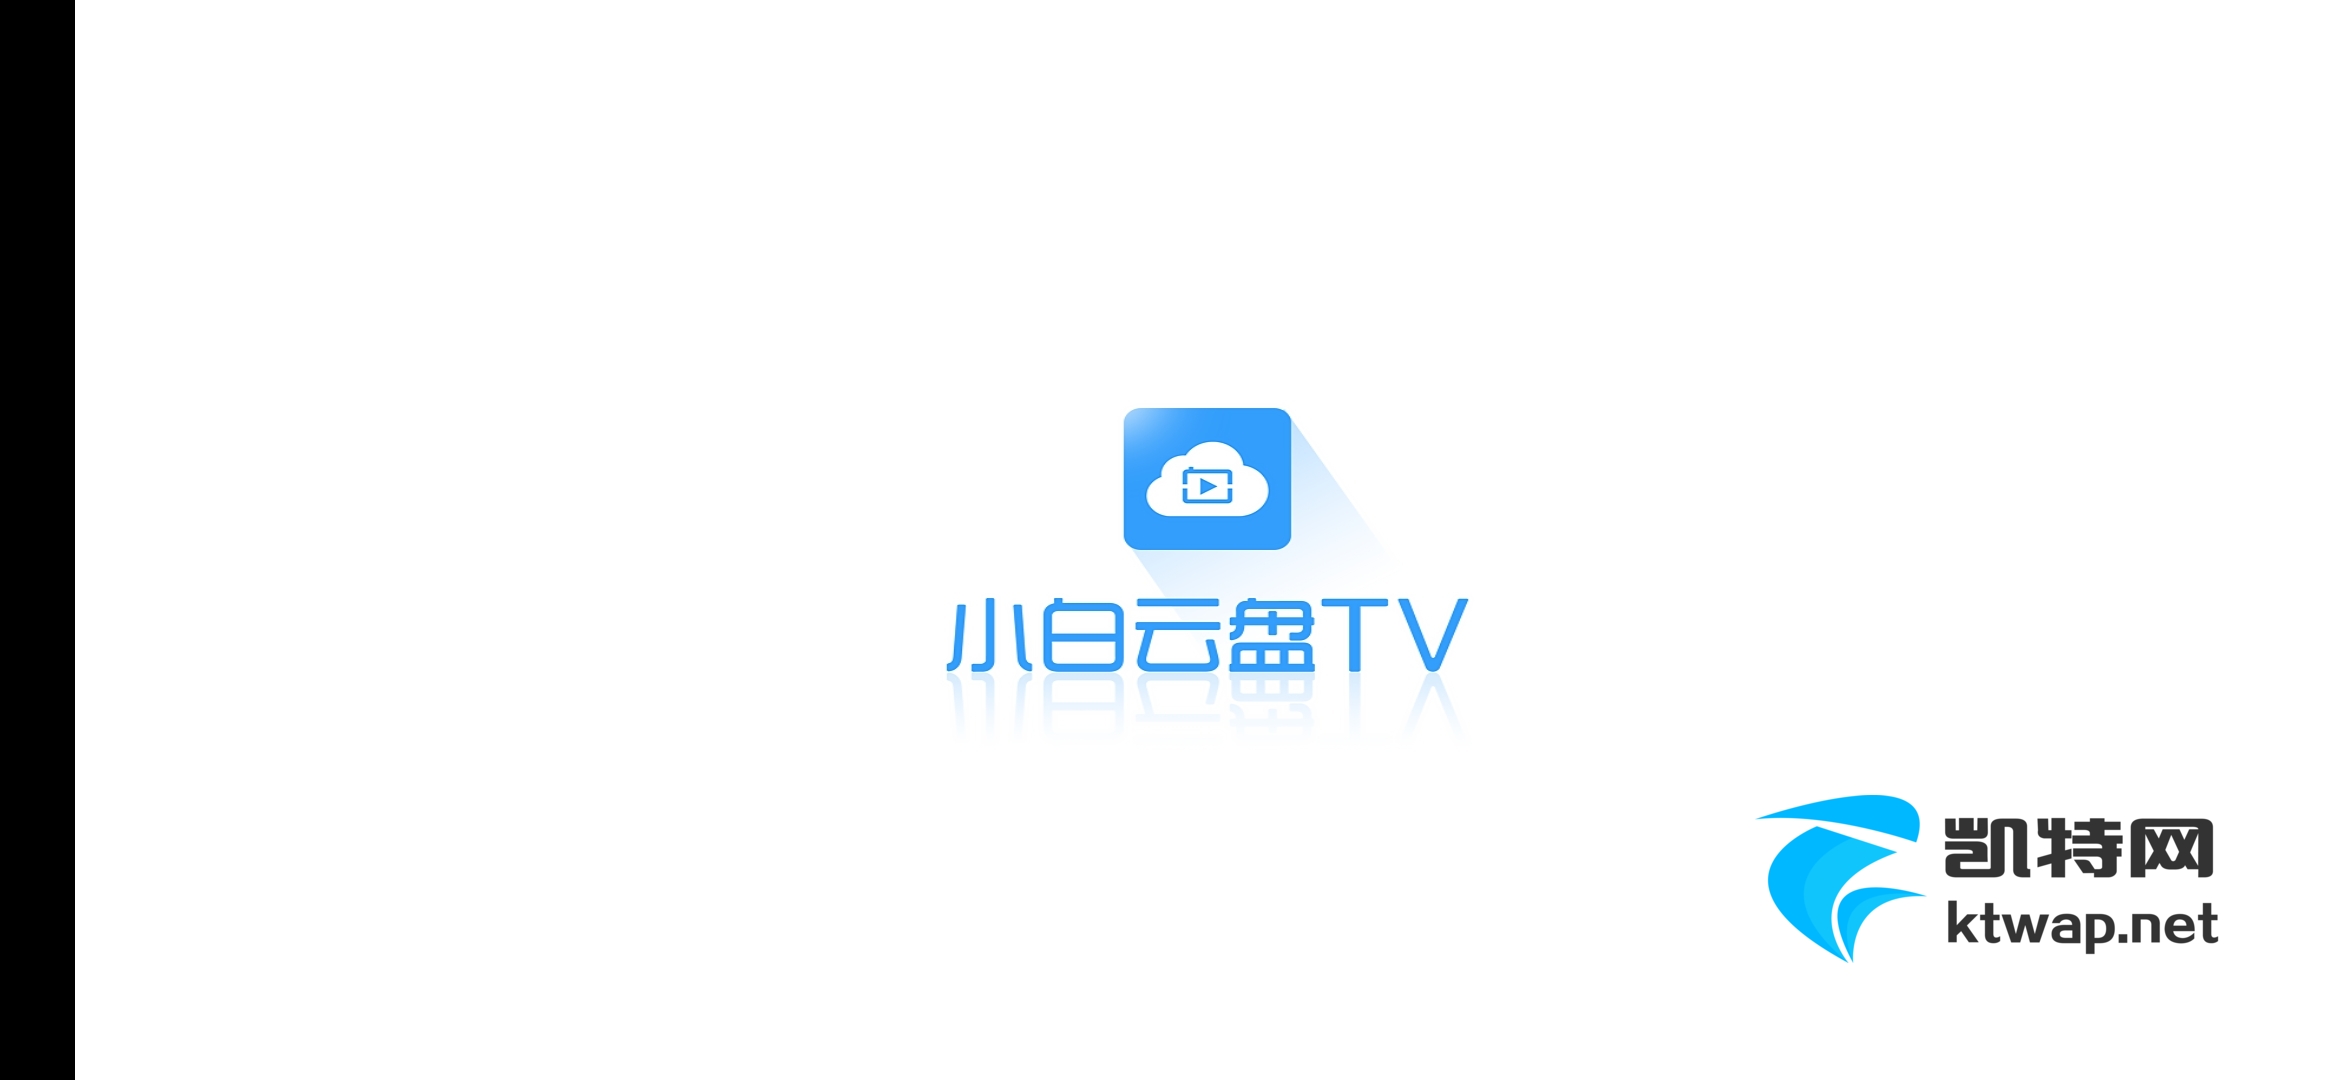 【待更新】小白云盘 TV_v1.5.0 阿里第三方播放器